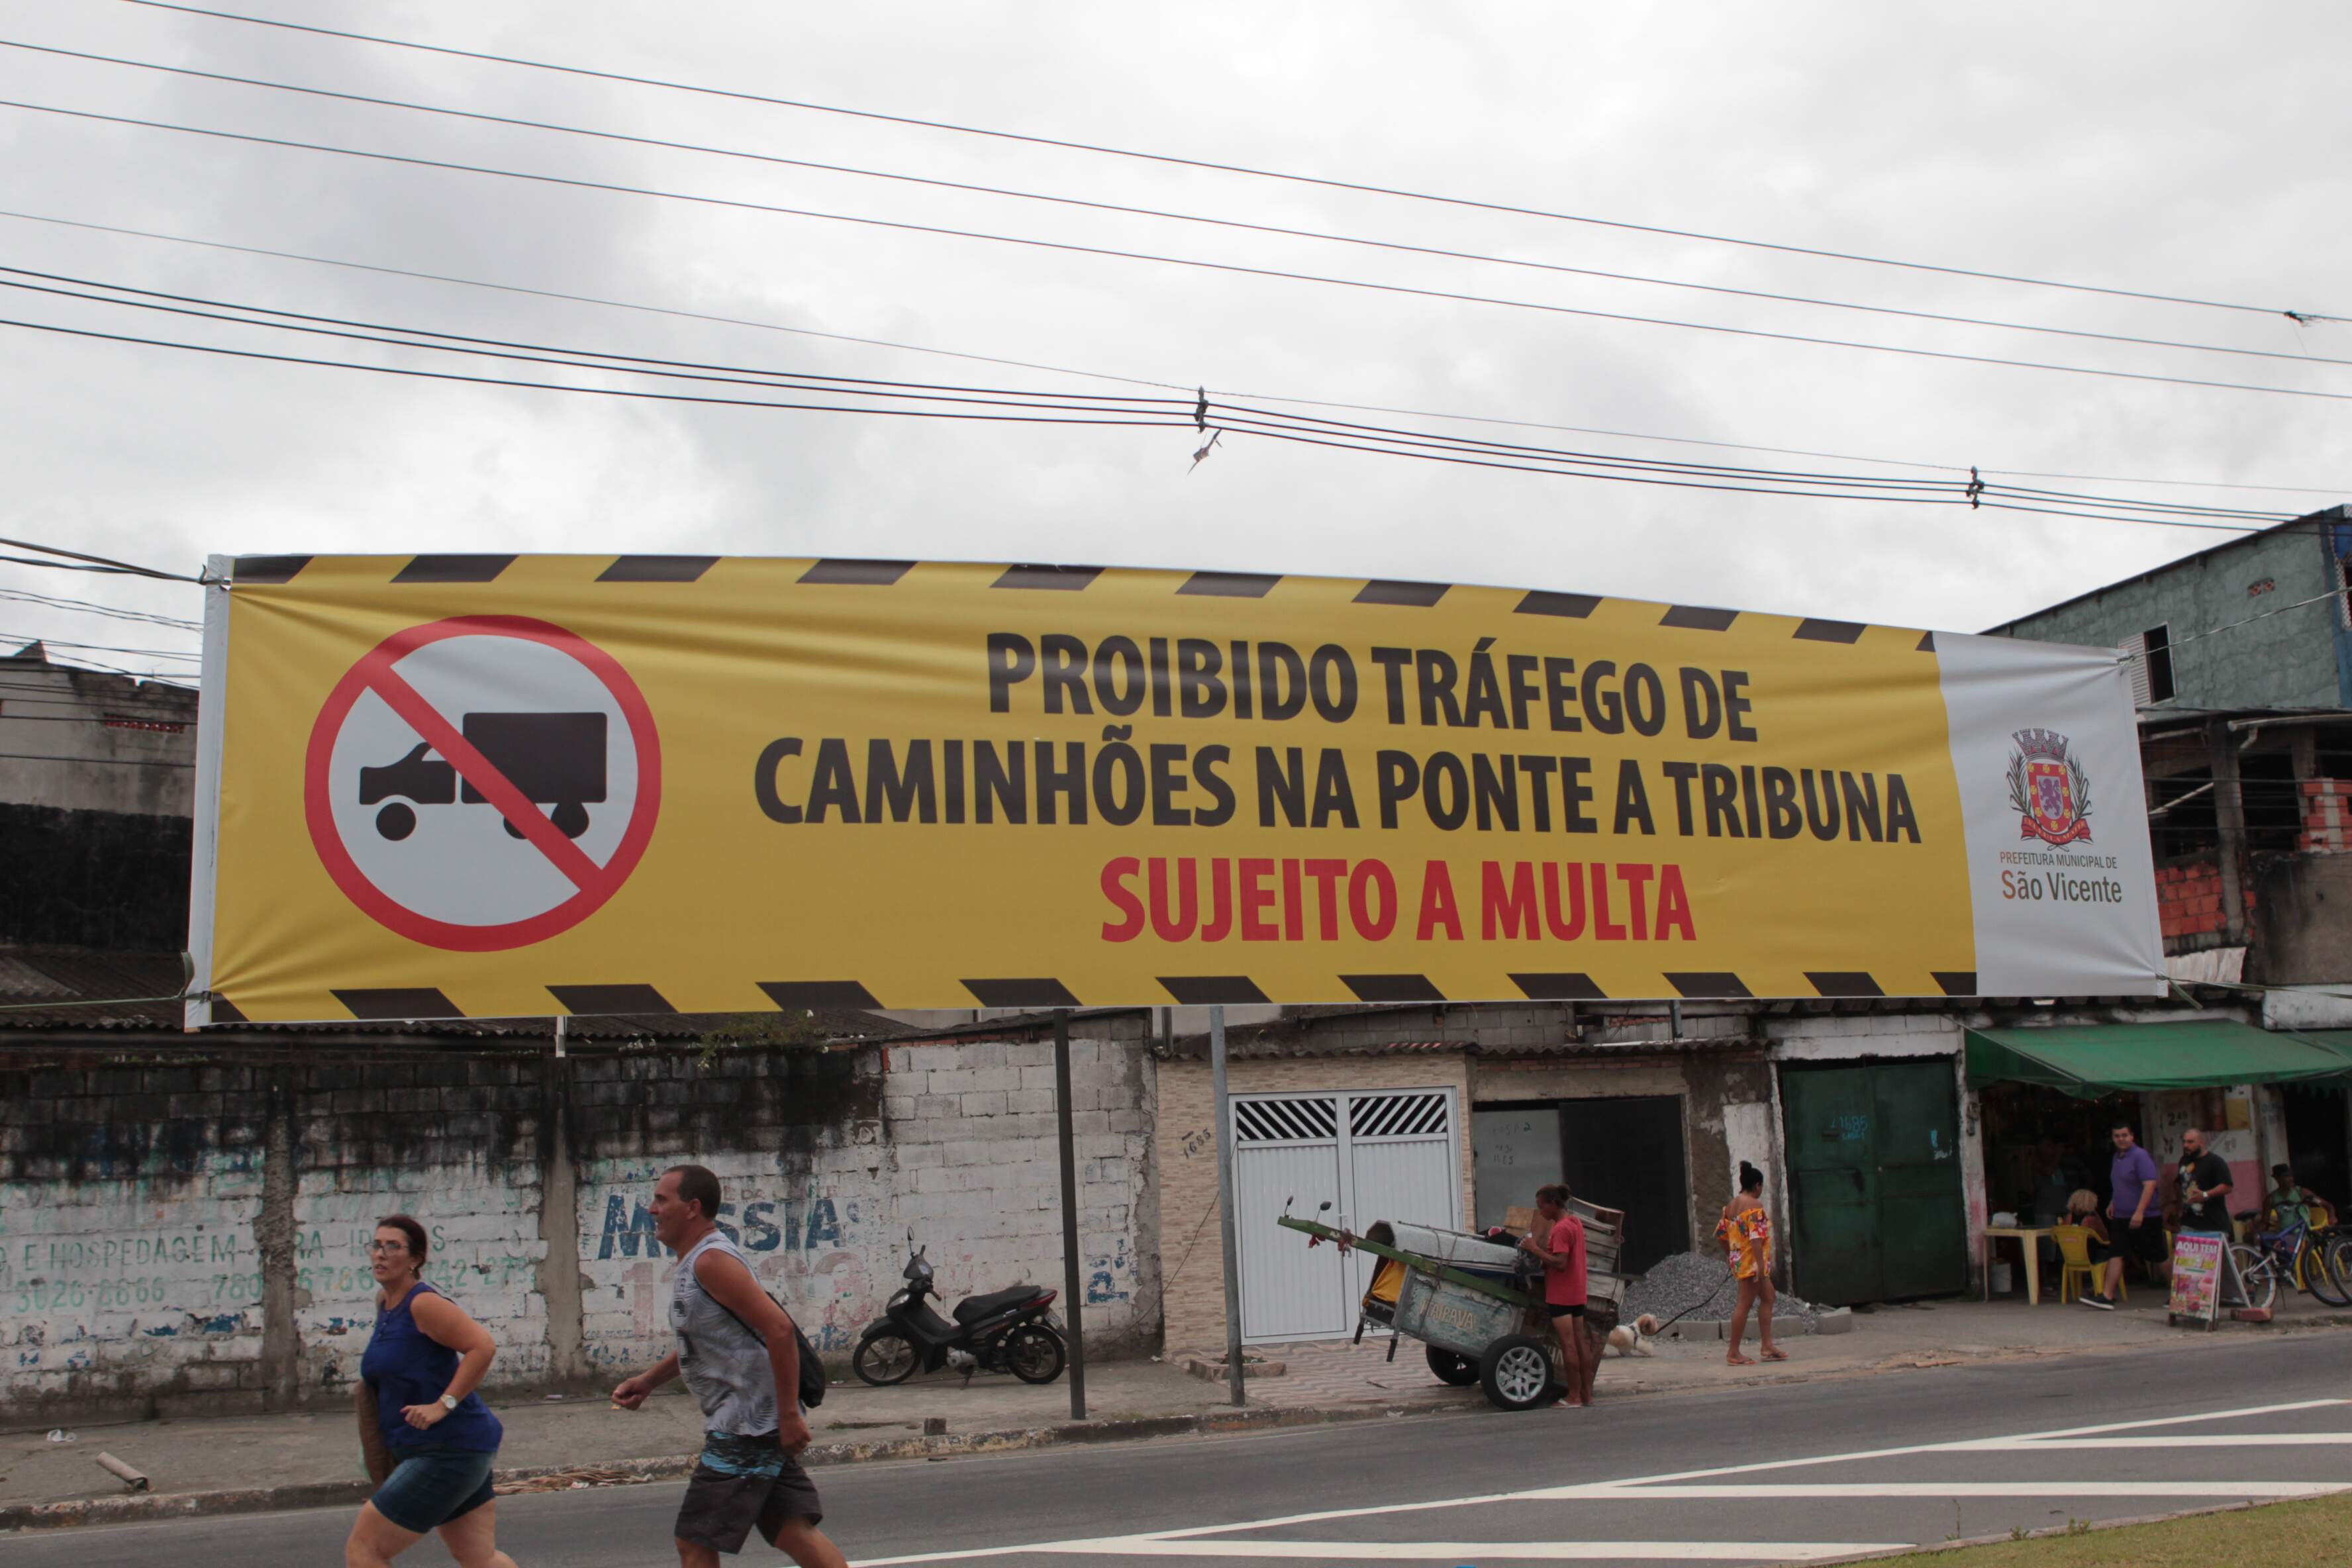 Prefeitura de São Vicente instalou uma faixa no local para alertar aos caminhões sobre proibição